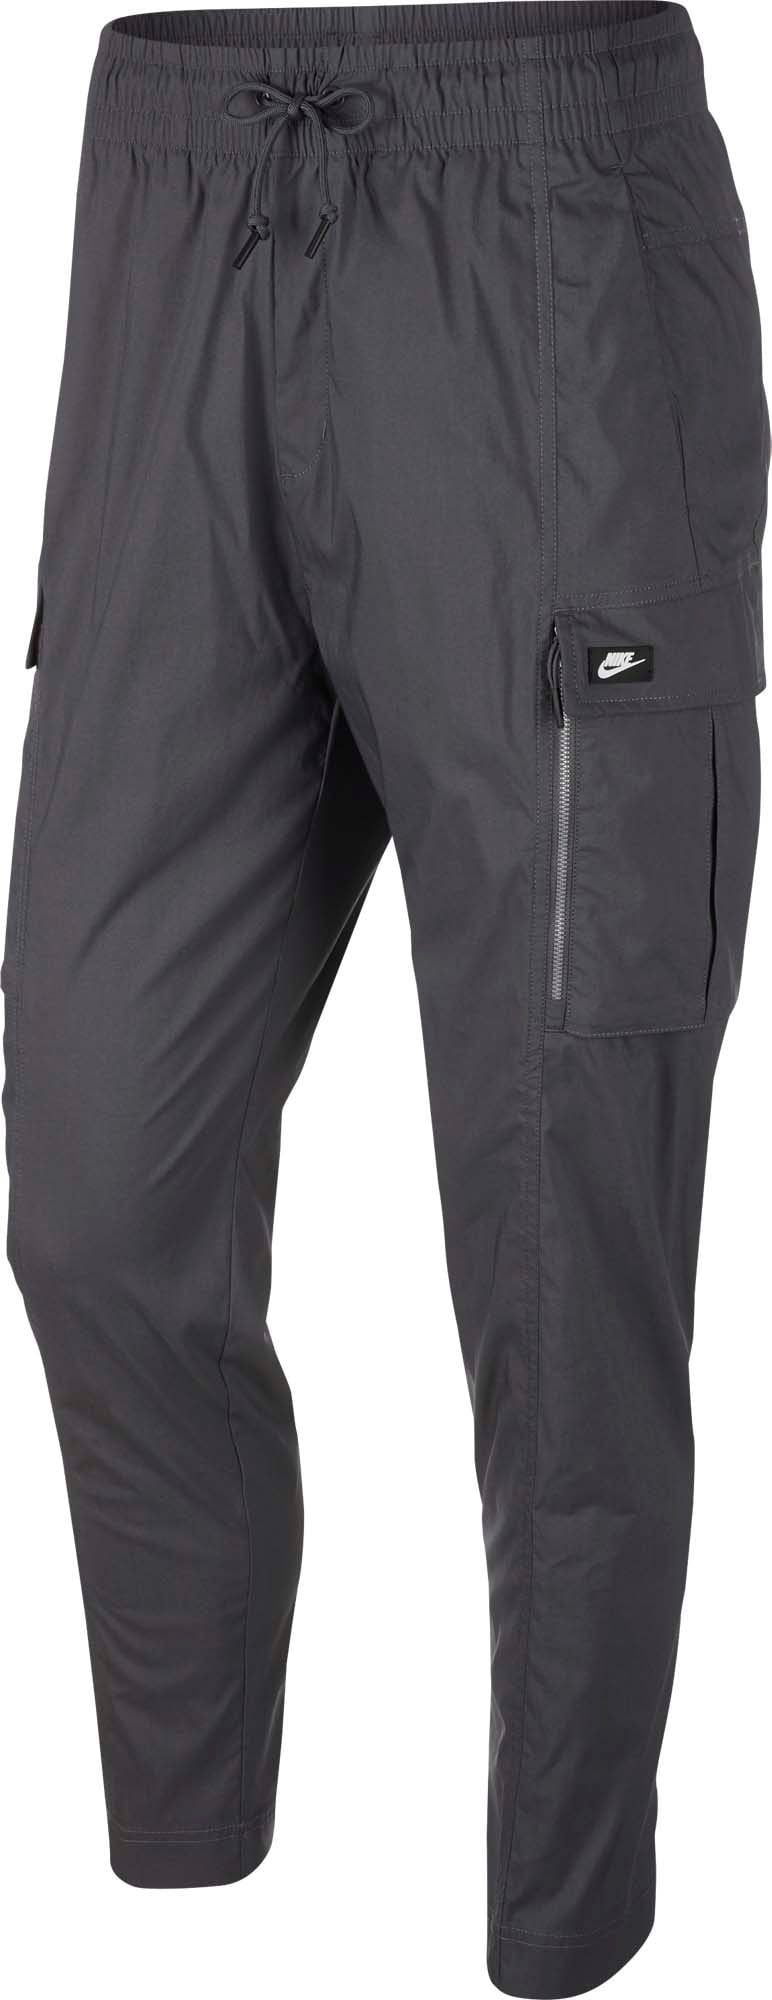 nike sportswear men's cargo street pants